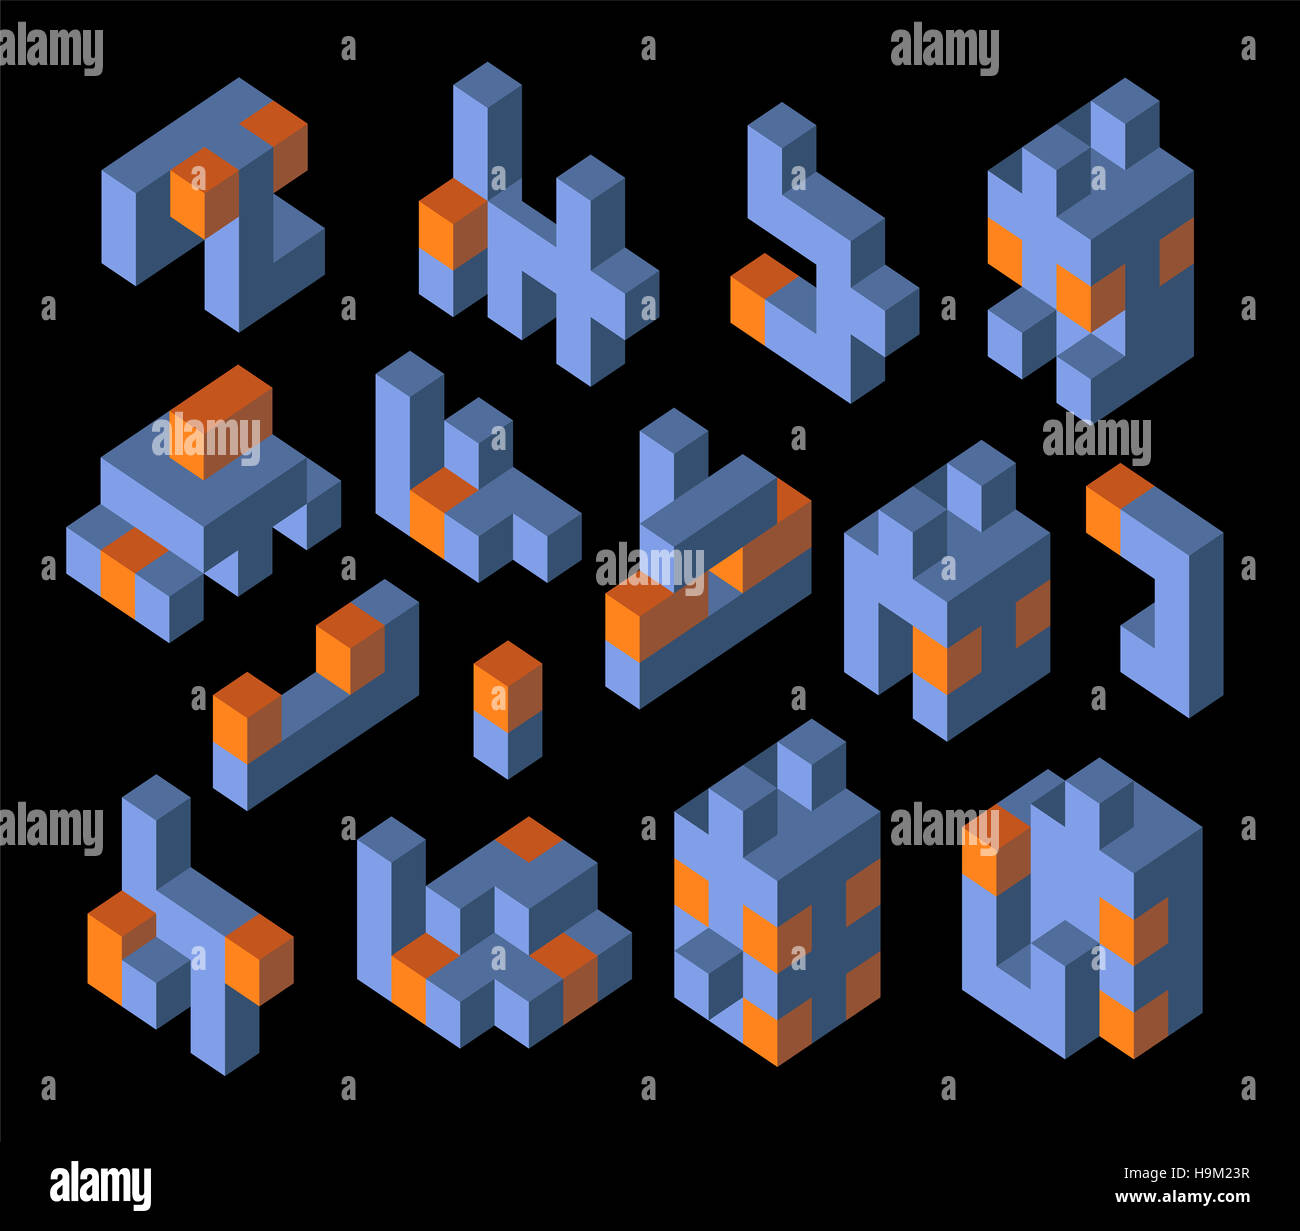 Isometrische abstrakte geometrische Design-Elemente mit farbigen Teile auf einem dunklen Hintergrund Stockfoto